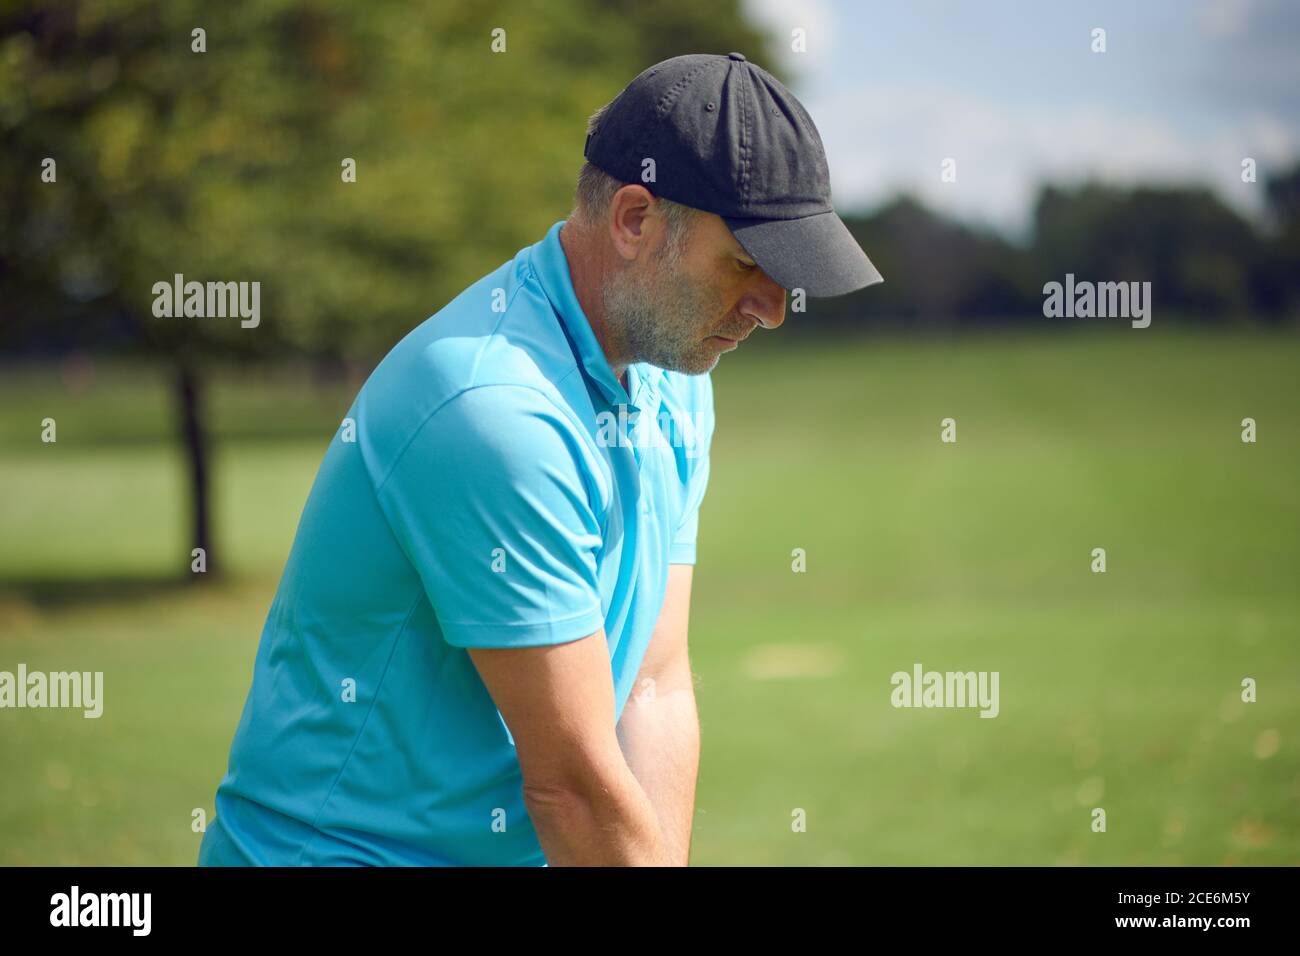 Männliche Golfer schwingt am Ball mit einem eisernen Schläger Als er seinen Schuss auf einem Golfplatz in nimmt Eine Nahaufnahme Oberkörperansicht in einem gesunden aktiven Lebensstil Co Stockfoto